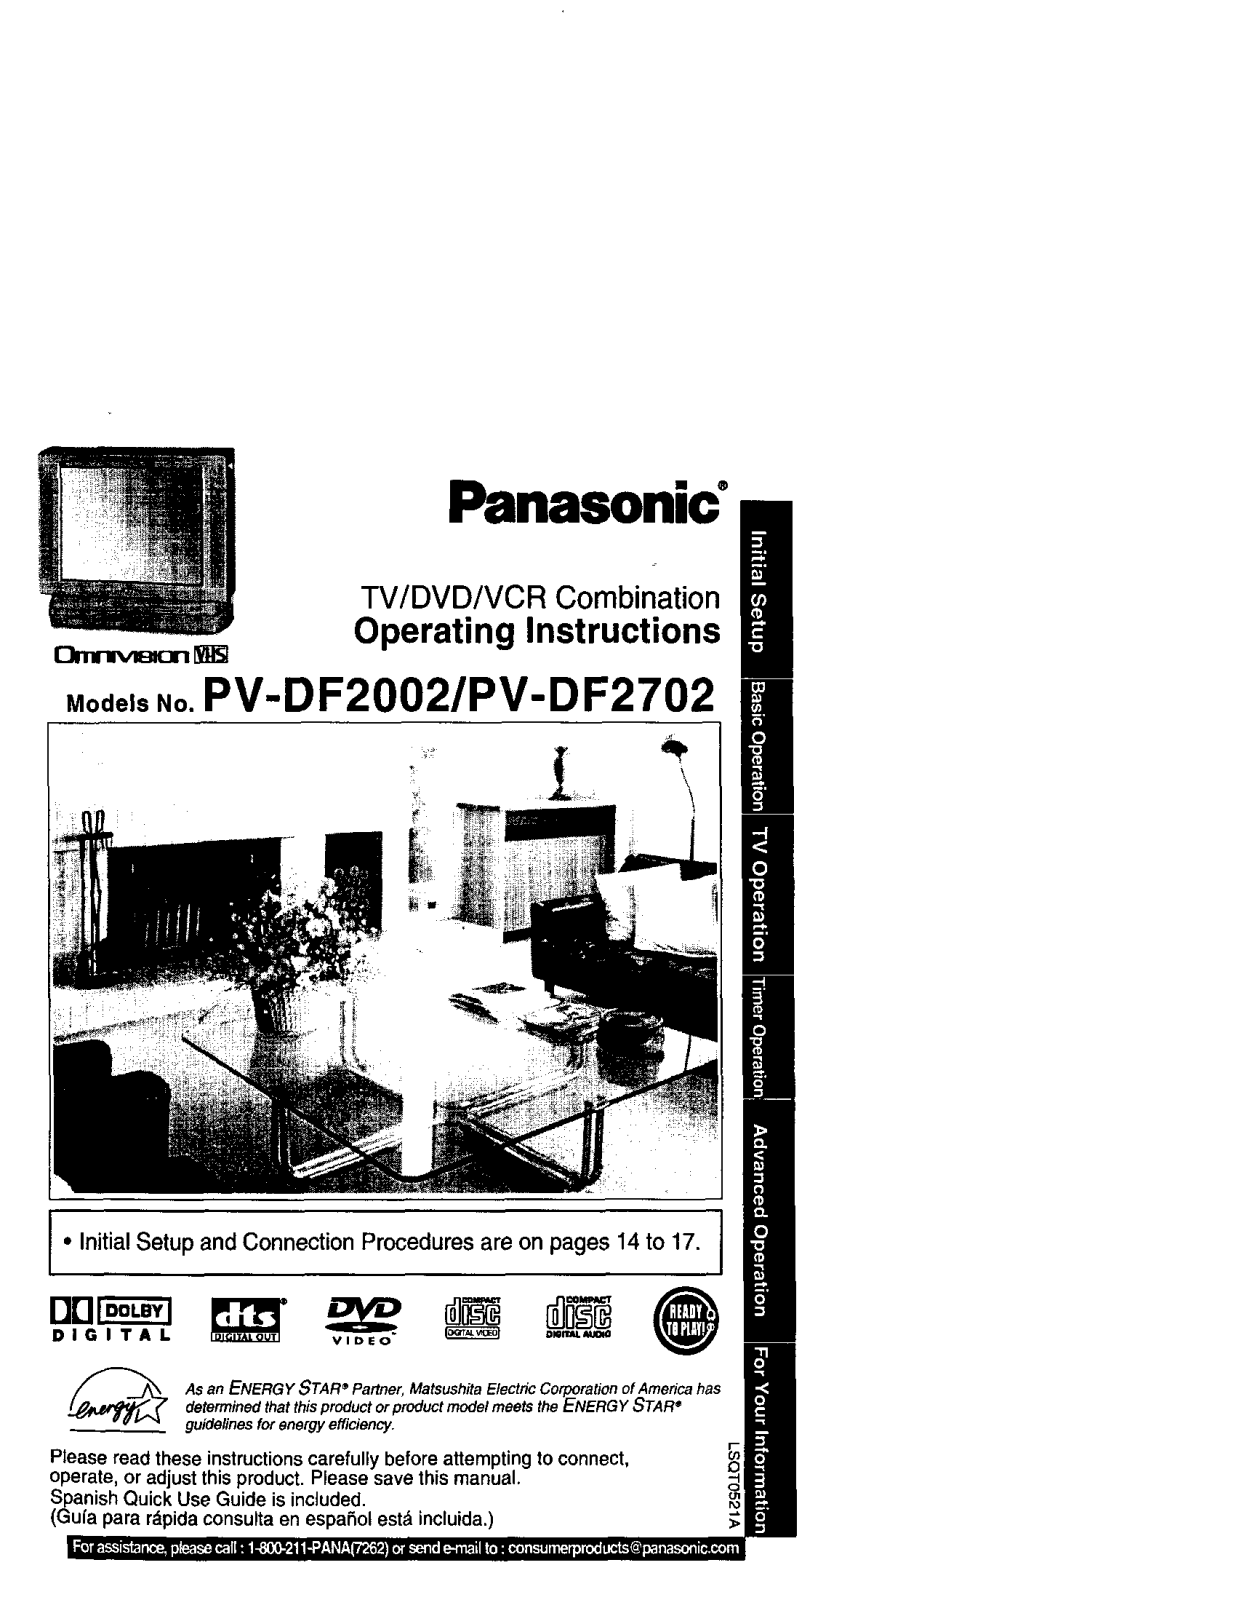 Panasonic PV-DF2702, PV-DF2002 Owner’s Manual